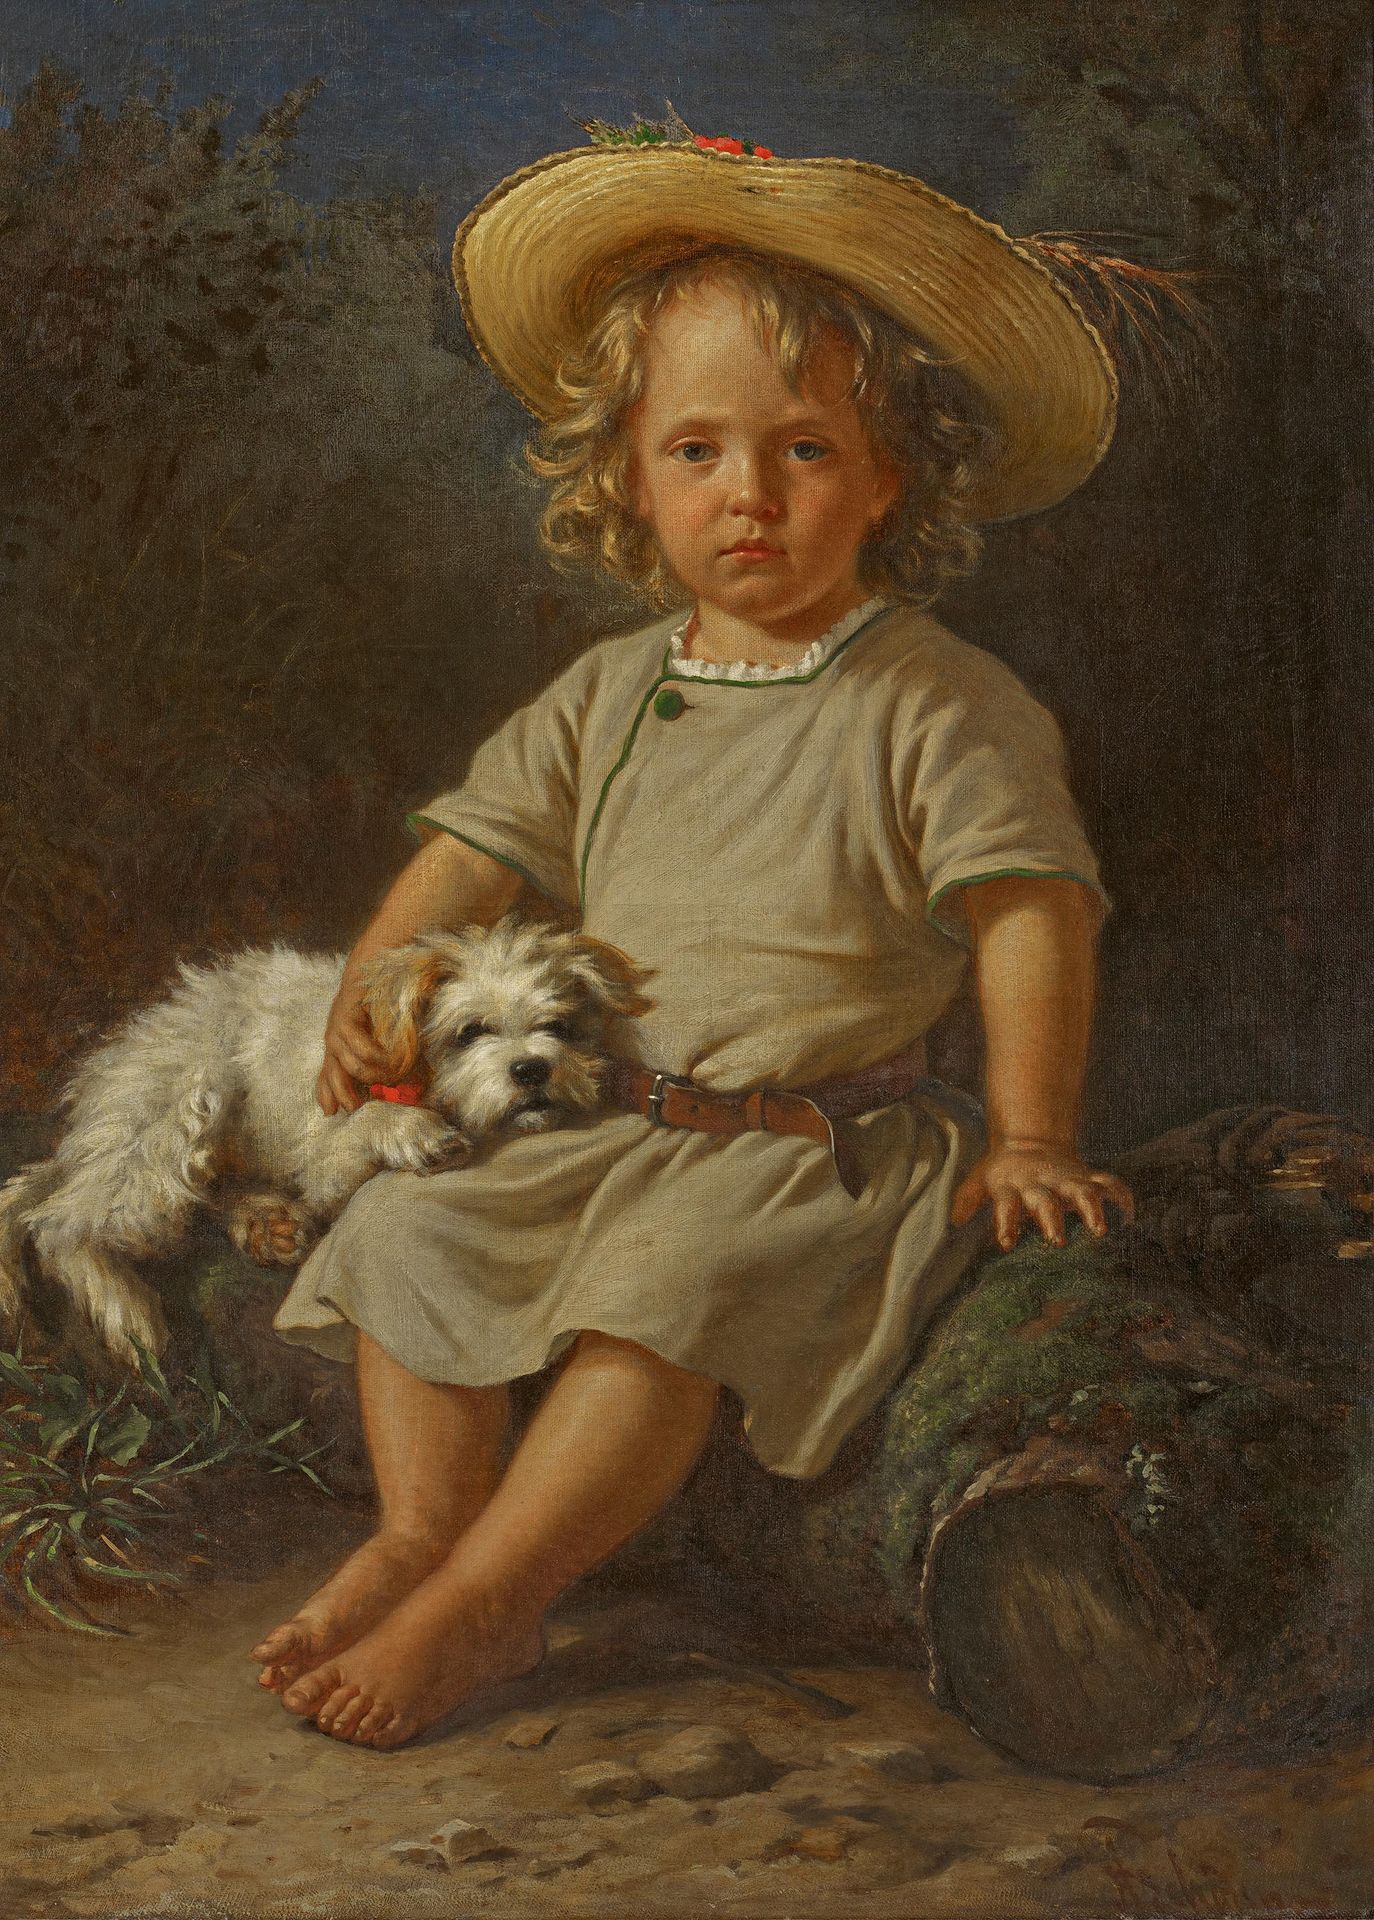 Deutsche Schule 德国学校
19世纪。
题目： 戴夏帽和狗的男孩肖像。
技术： 布面油画。
尺寸： 92,5 x 68厘米。
右下角签名不清楚。
&hellip;